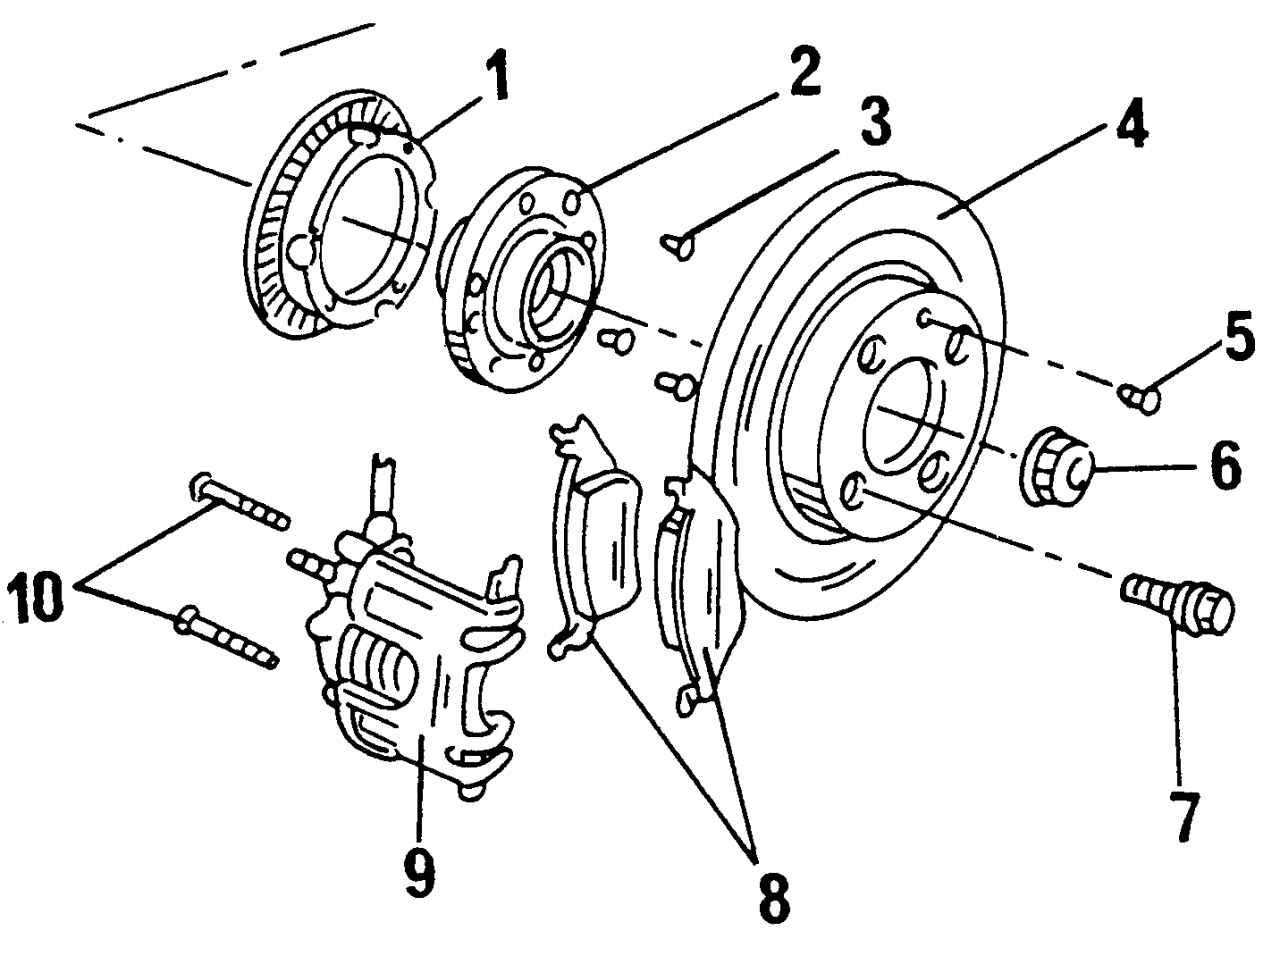 Замена переднего тормозного диска и тормозных колодок (для применения на моделе vw golf 3)